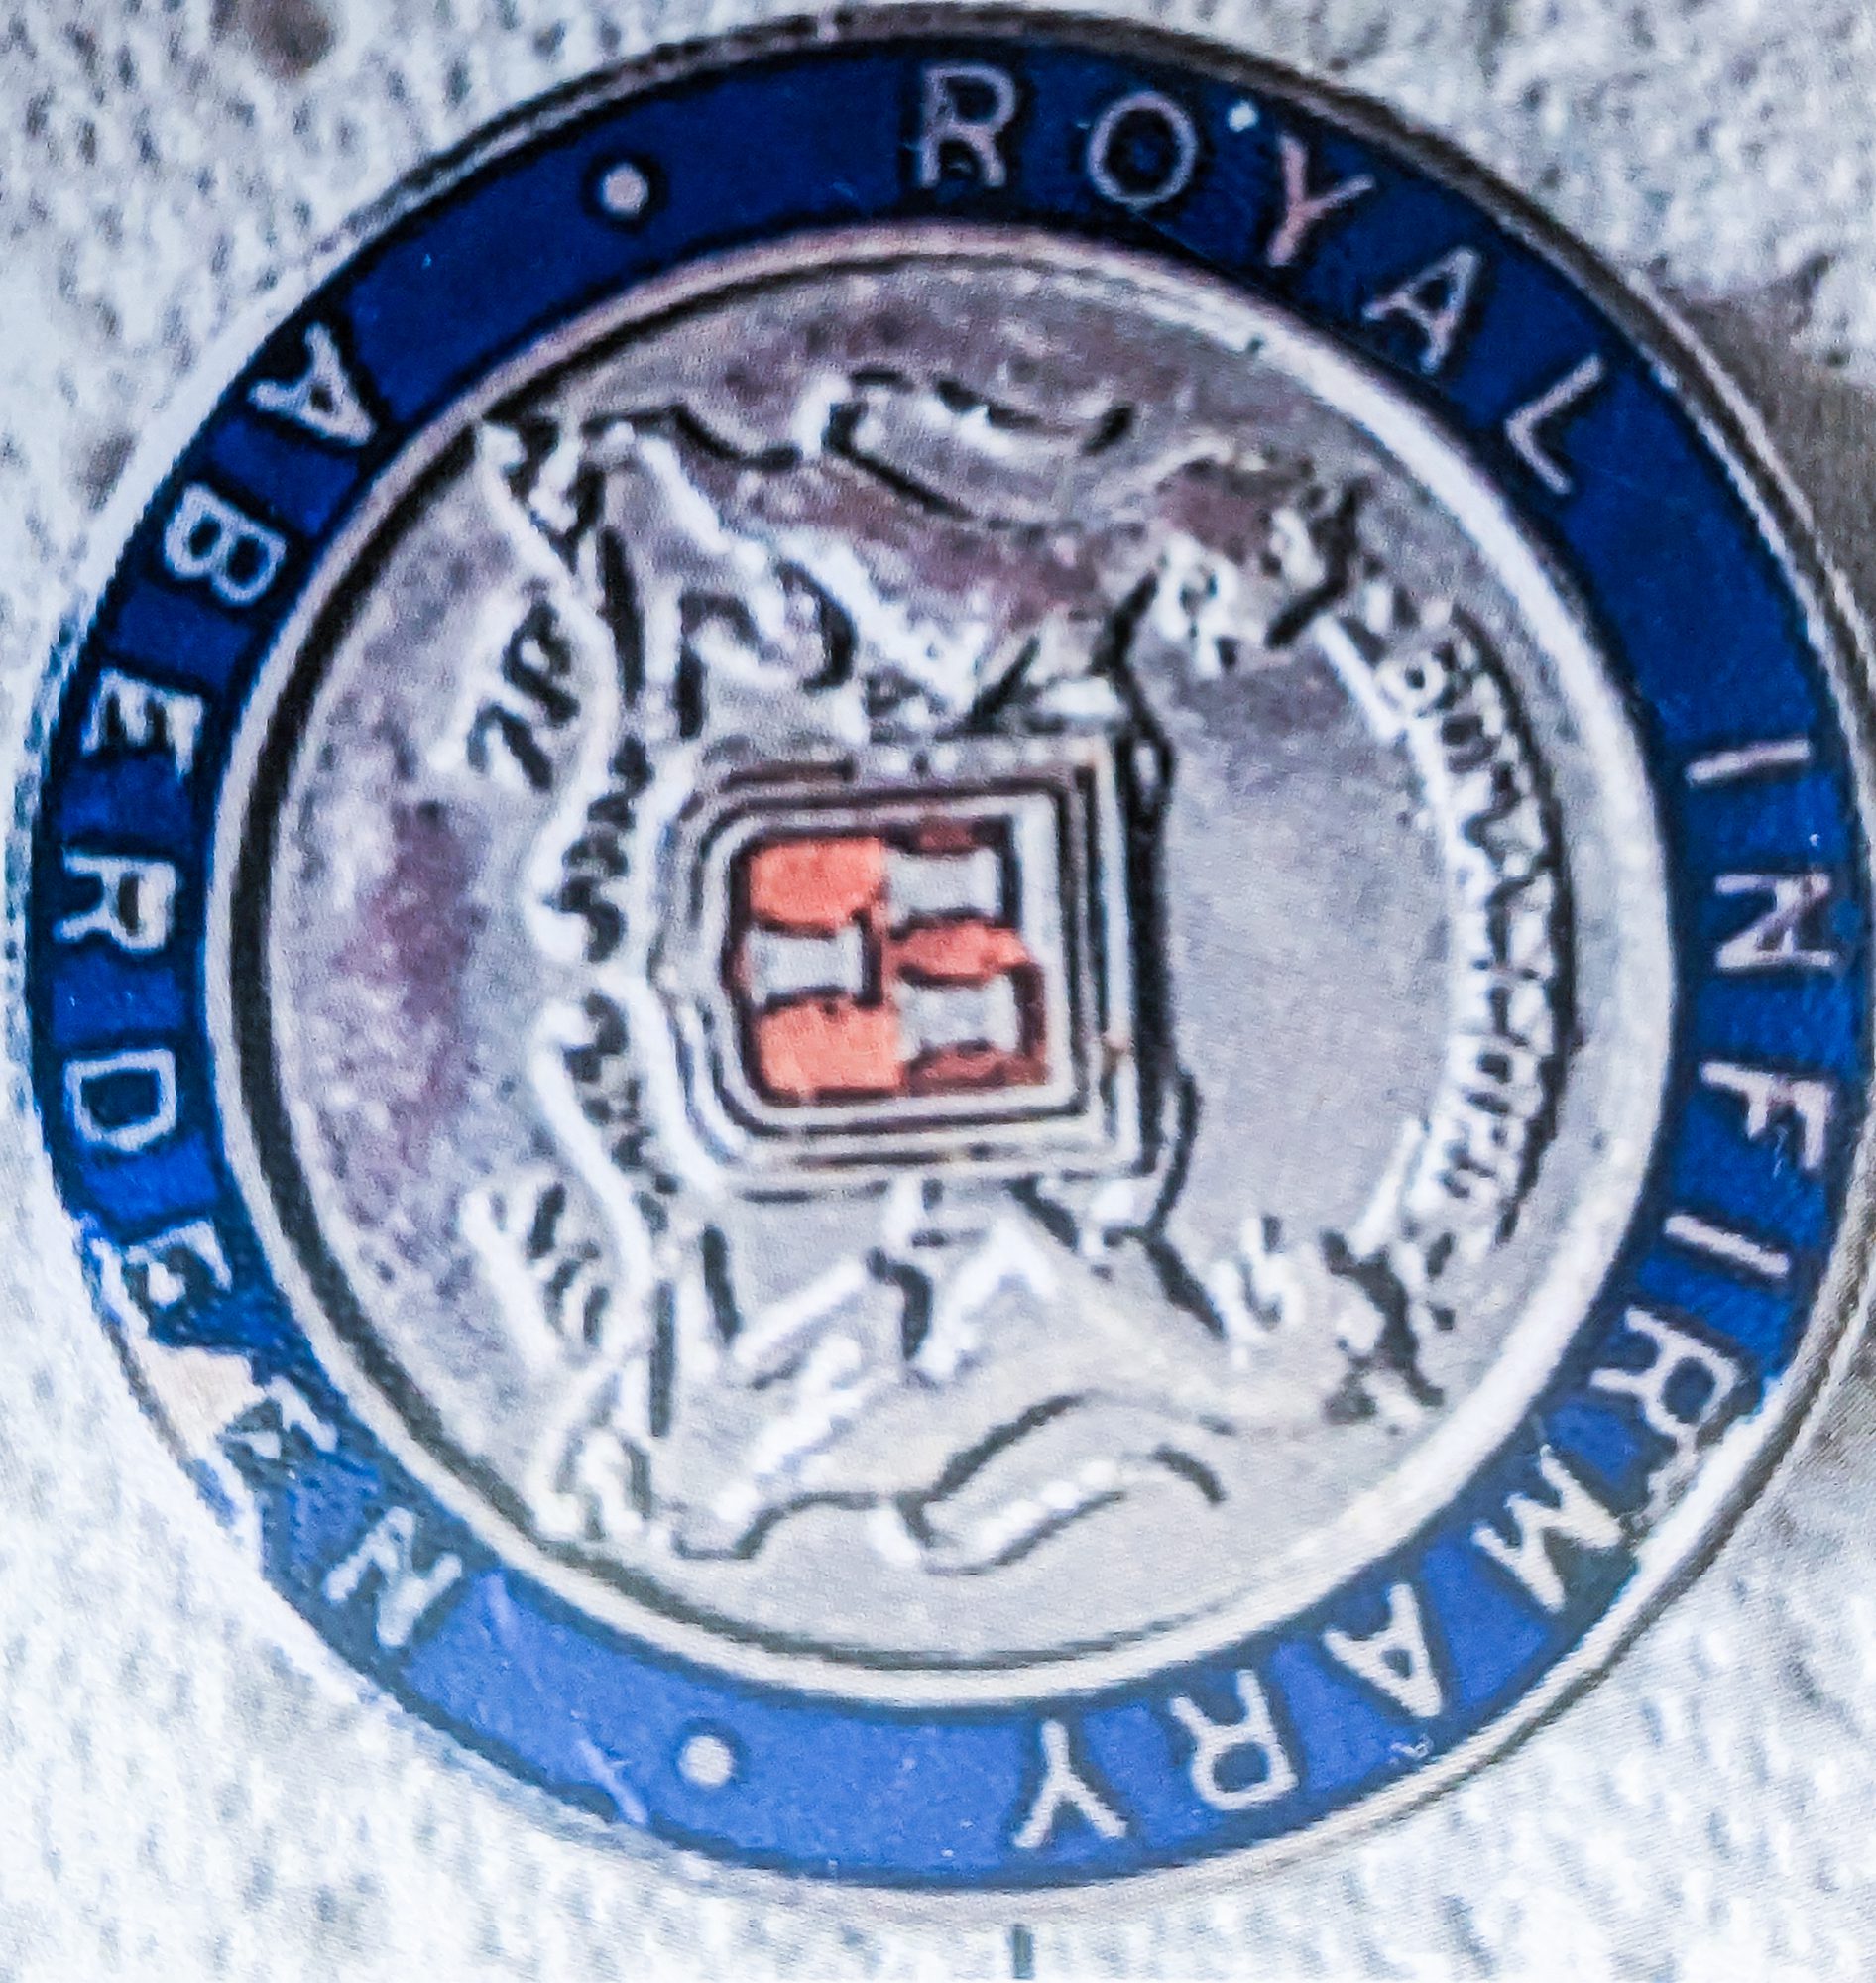 Royal infirmary badge.